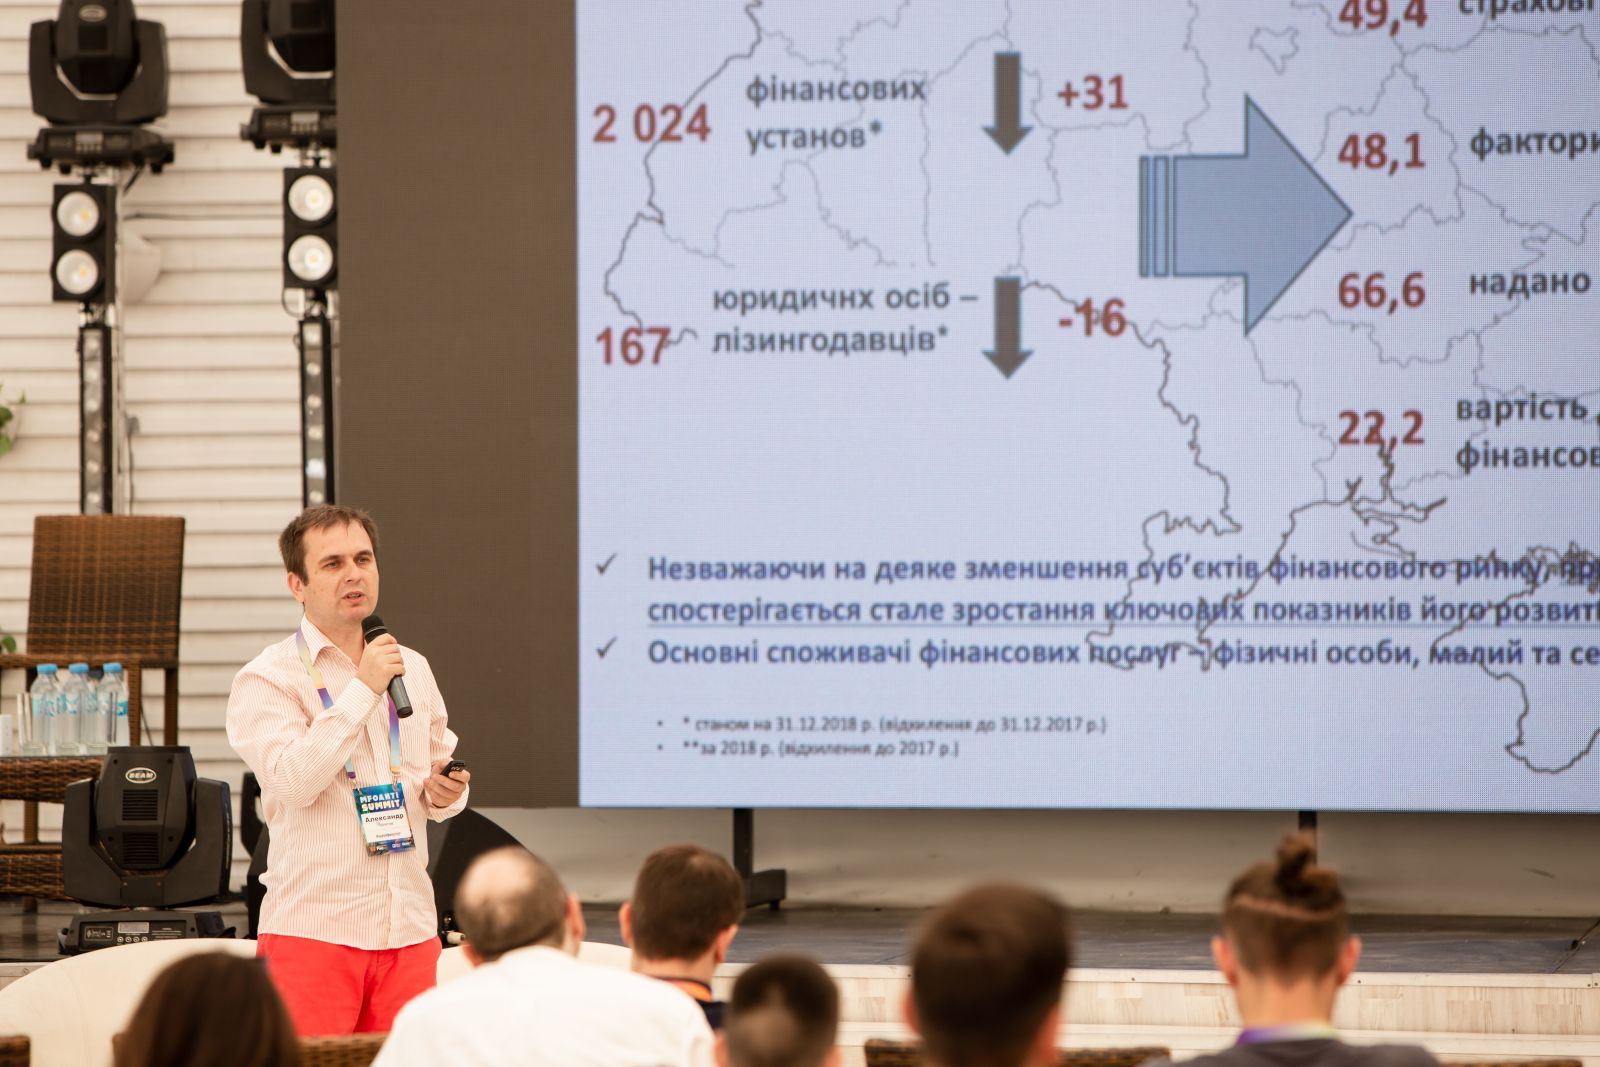 Олександр Залєтов демонструє успіхи небанківських фінансових організацій.